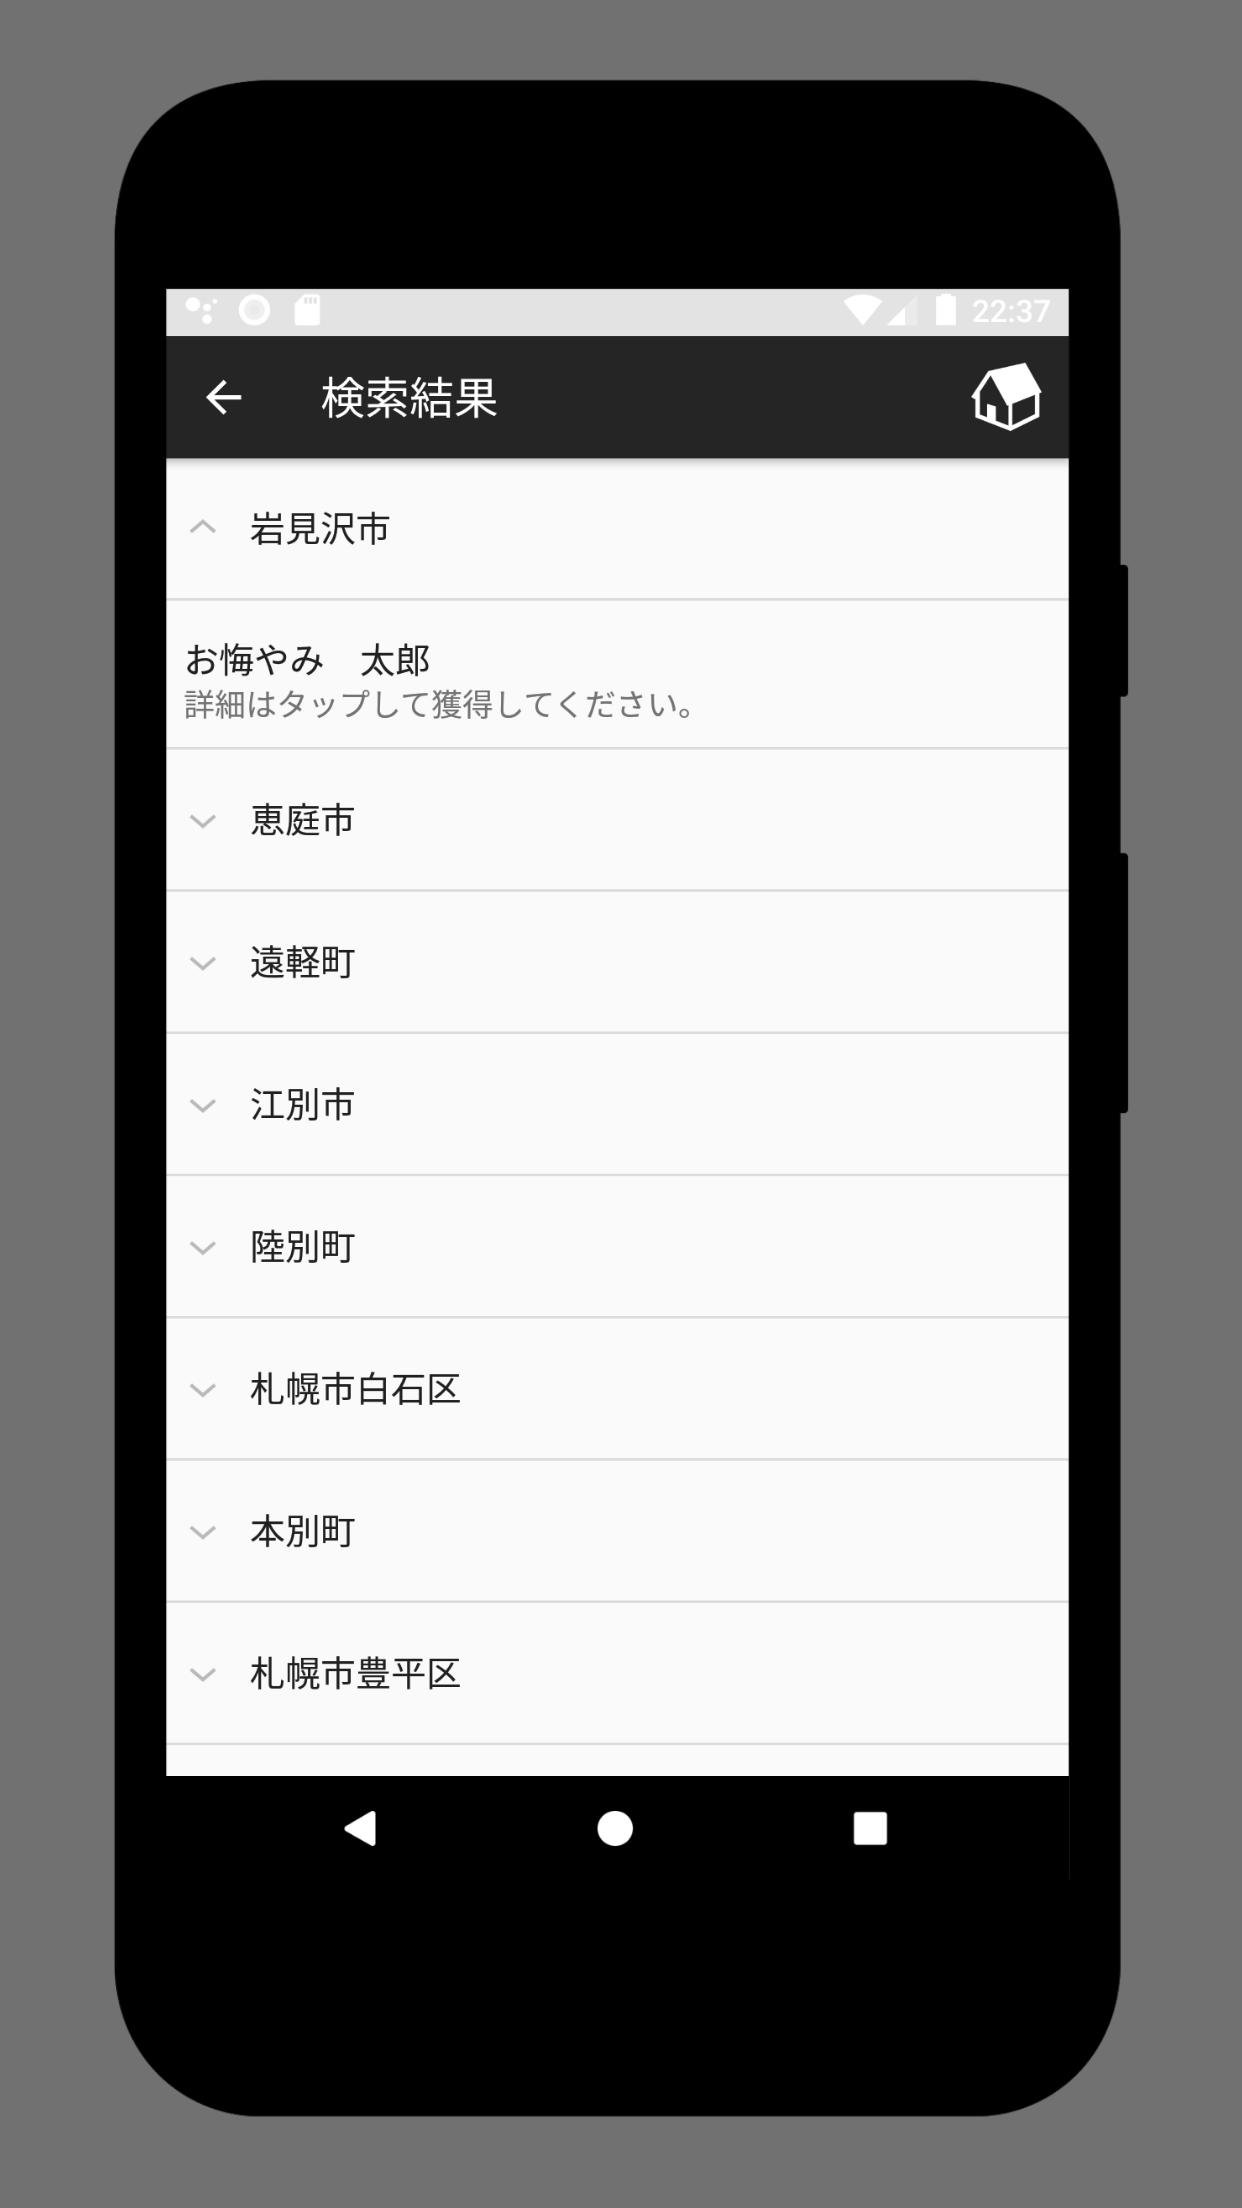 お悔やみ北海道 For Android Apk Download